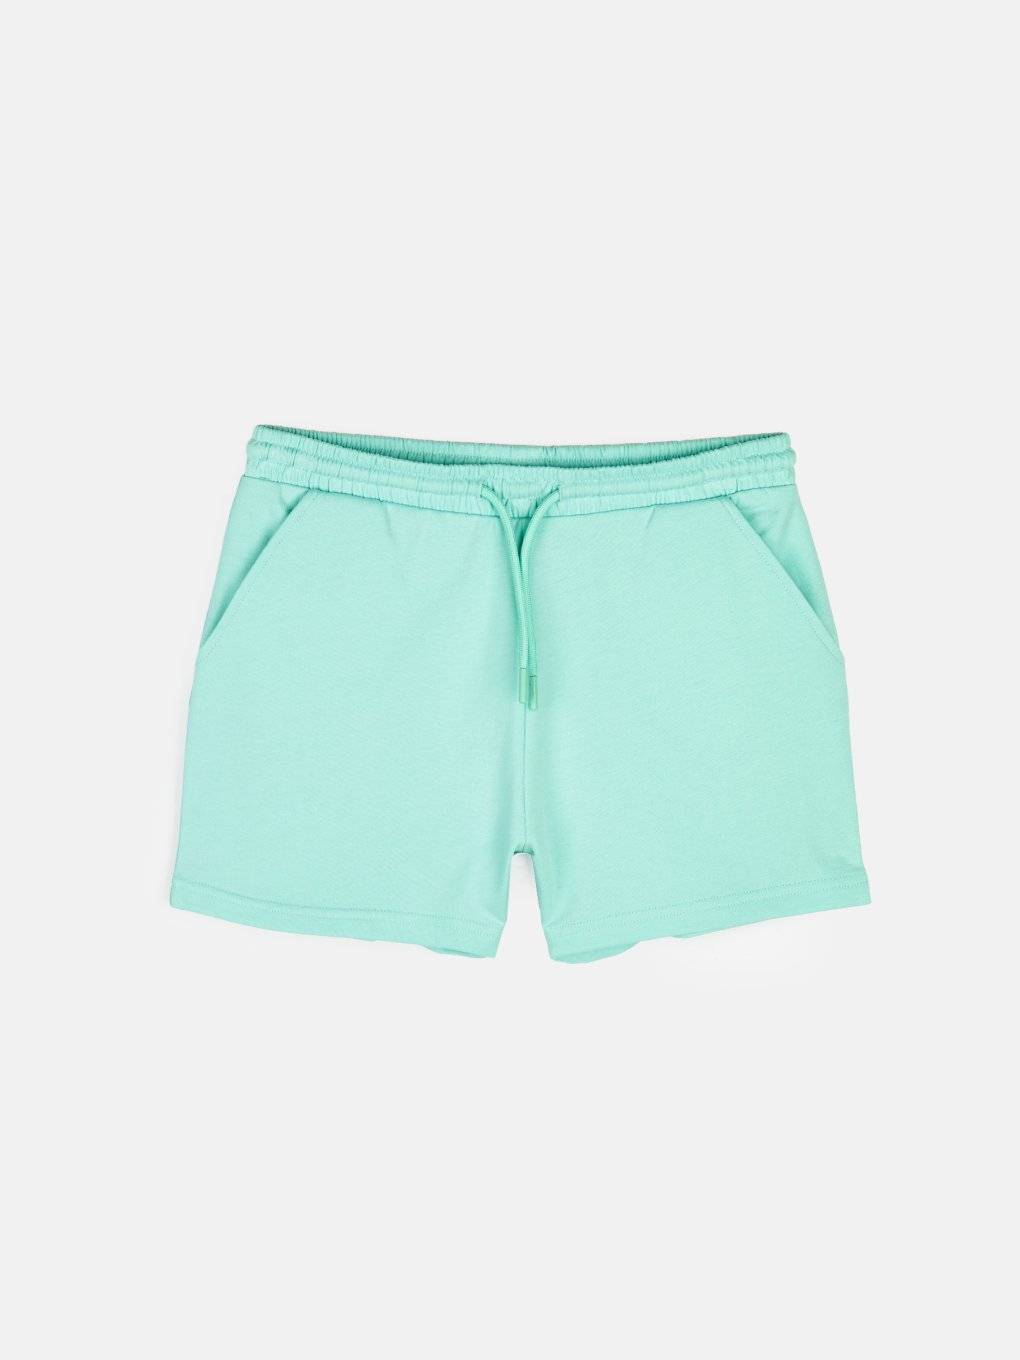 Basic shorts with pockets